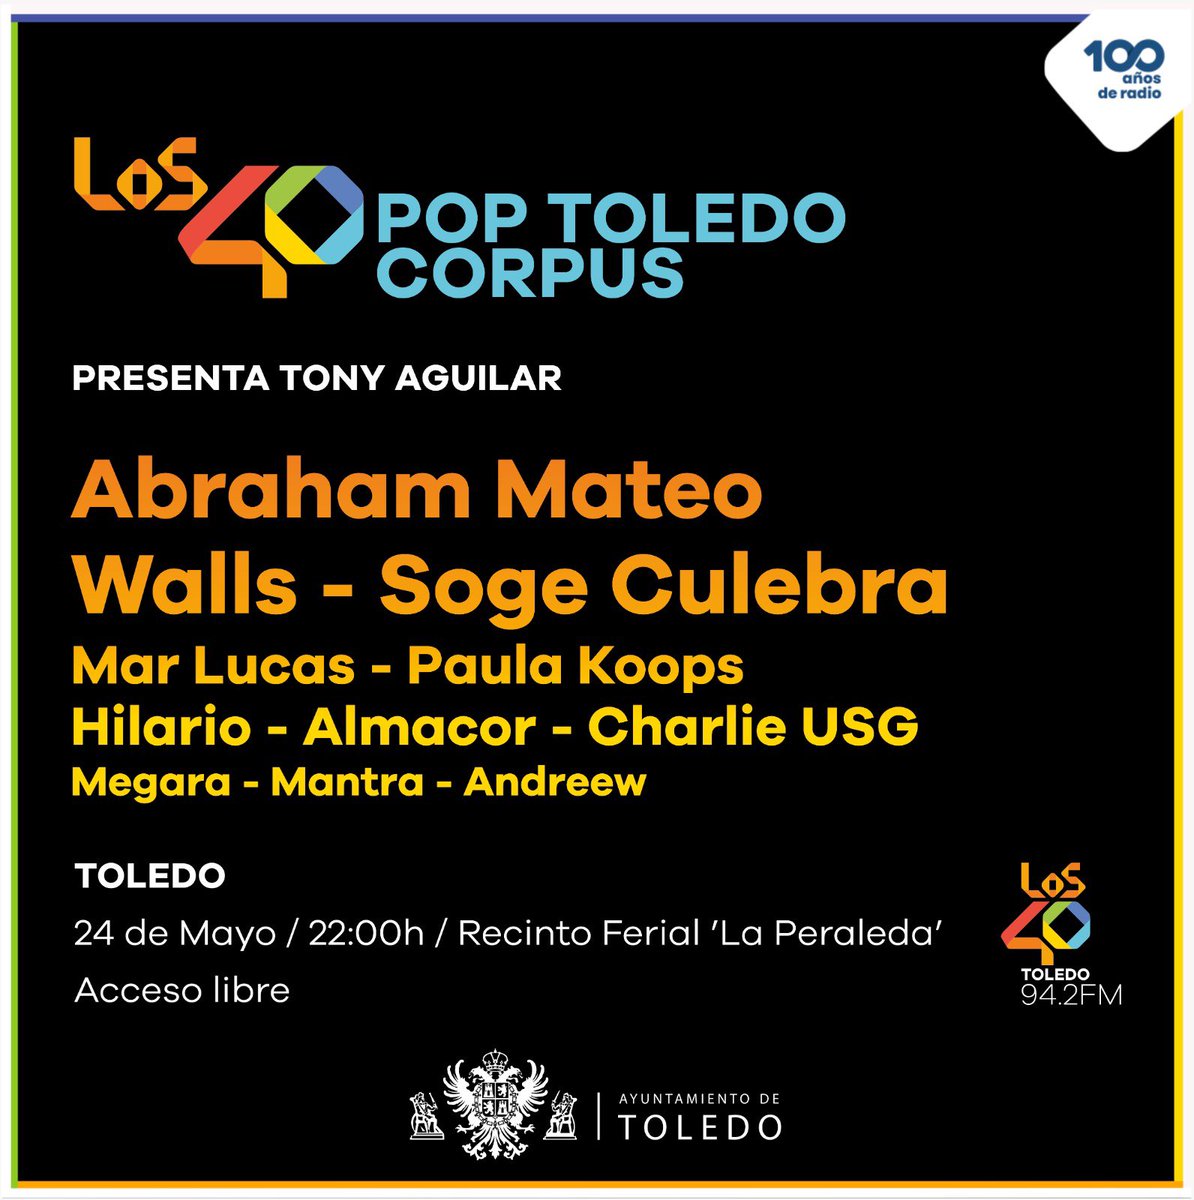 Volvemos a TOLEDO 🙌🏽🎶🫶🏽 El próximo viernes 24 de mayo a partir de las 22h celebramos el #corpus2024 con el concierto más espectacular de las fiestas #Los40PopToledo. Acceso libre y gratuito ¡Te esperamos! @LOS40CLM @toledoayto